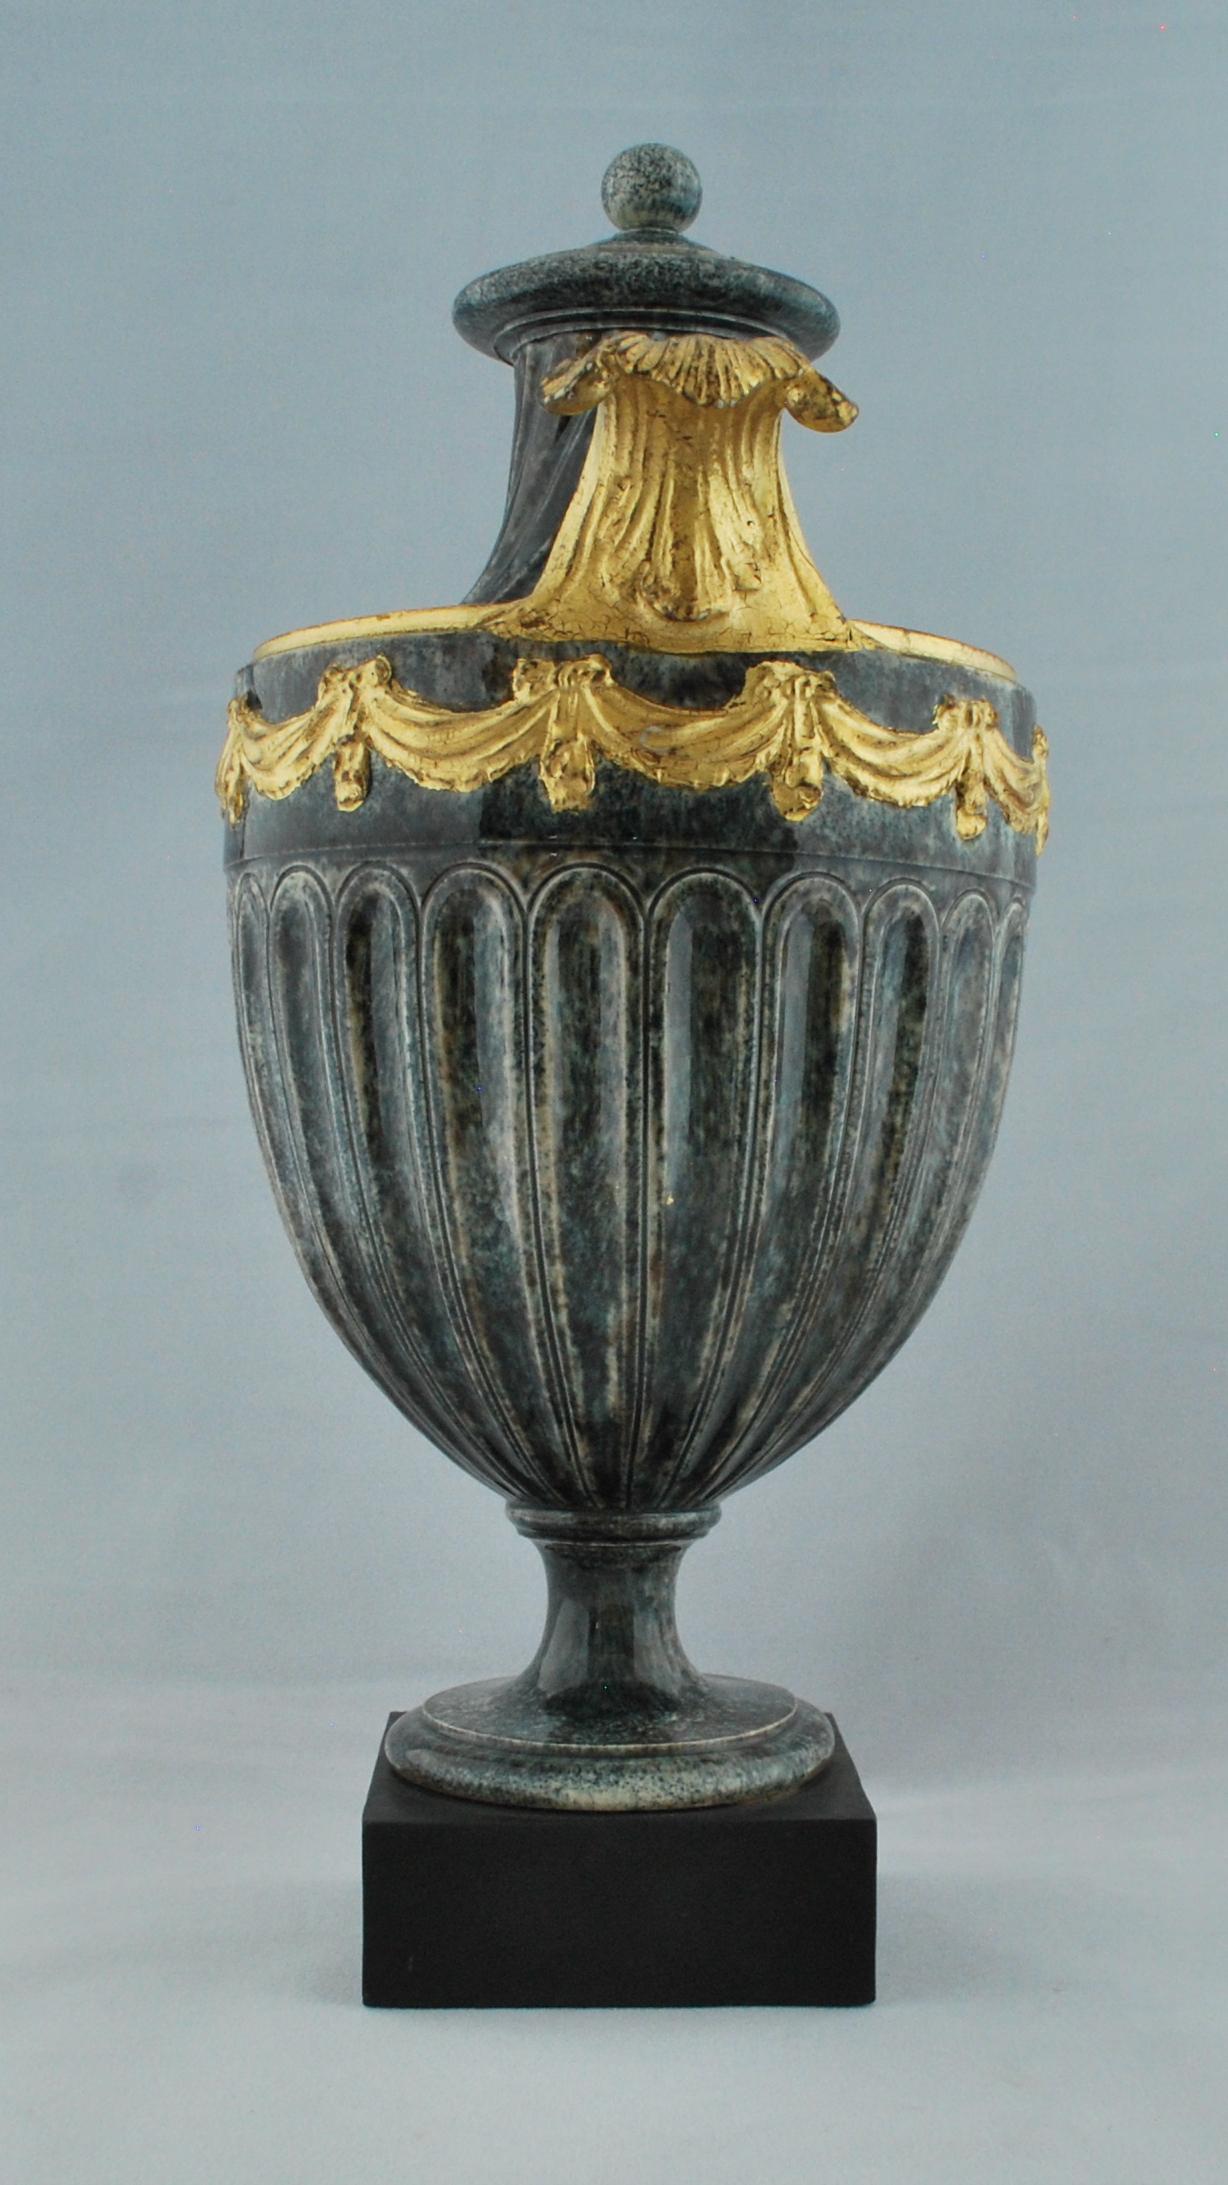 Eine schildförmige Vase mit Porphyrdekor, die mit Vergoldung verziert ist.

Gekennzeichnet für Wedgwood & Bentley.